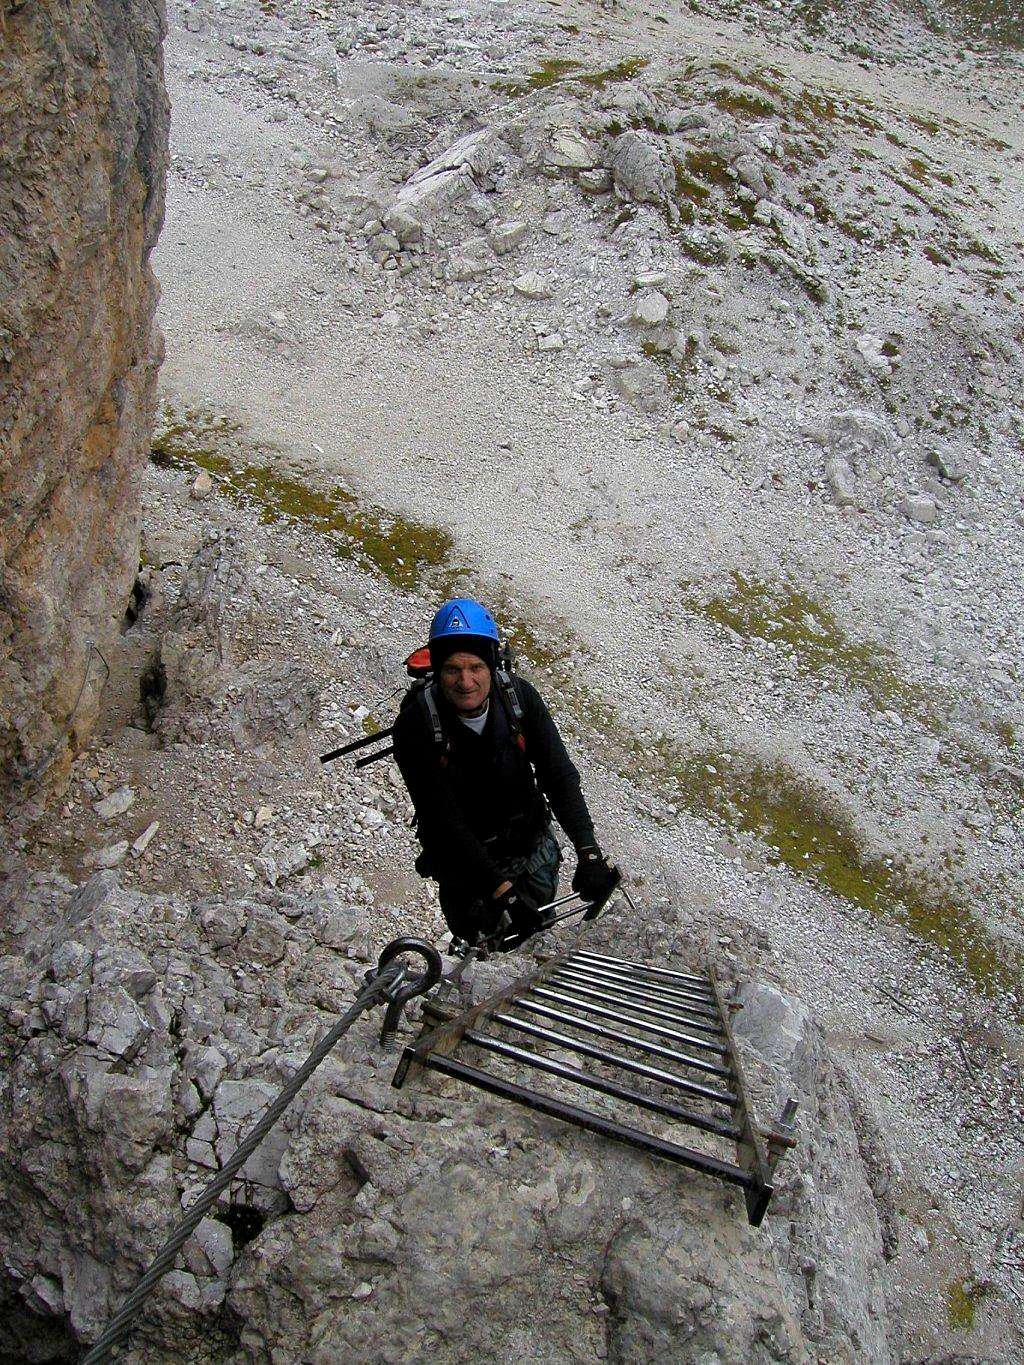 On the ladders to Toblinger Knoten / Torre di Toblin, 2617m.